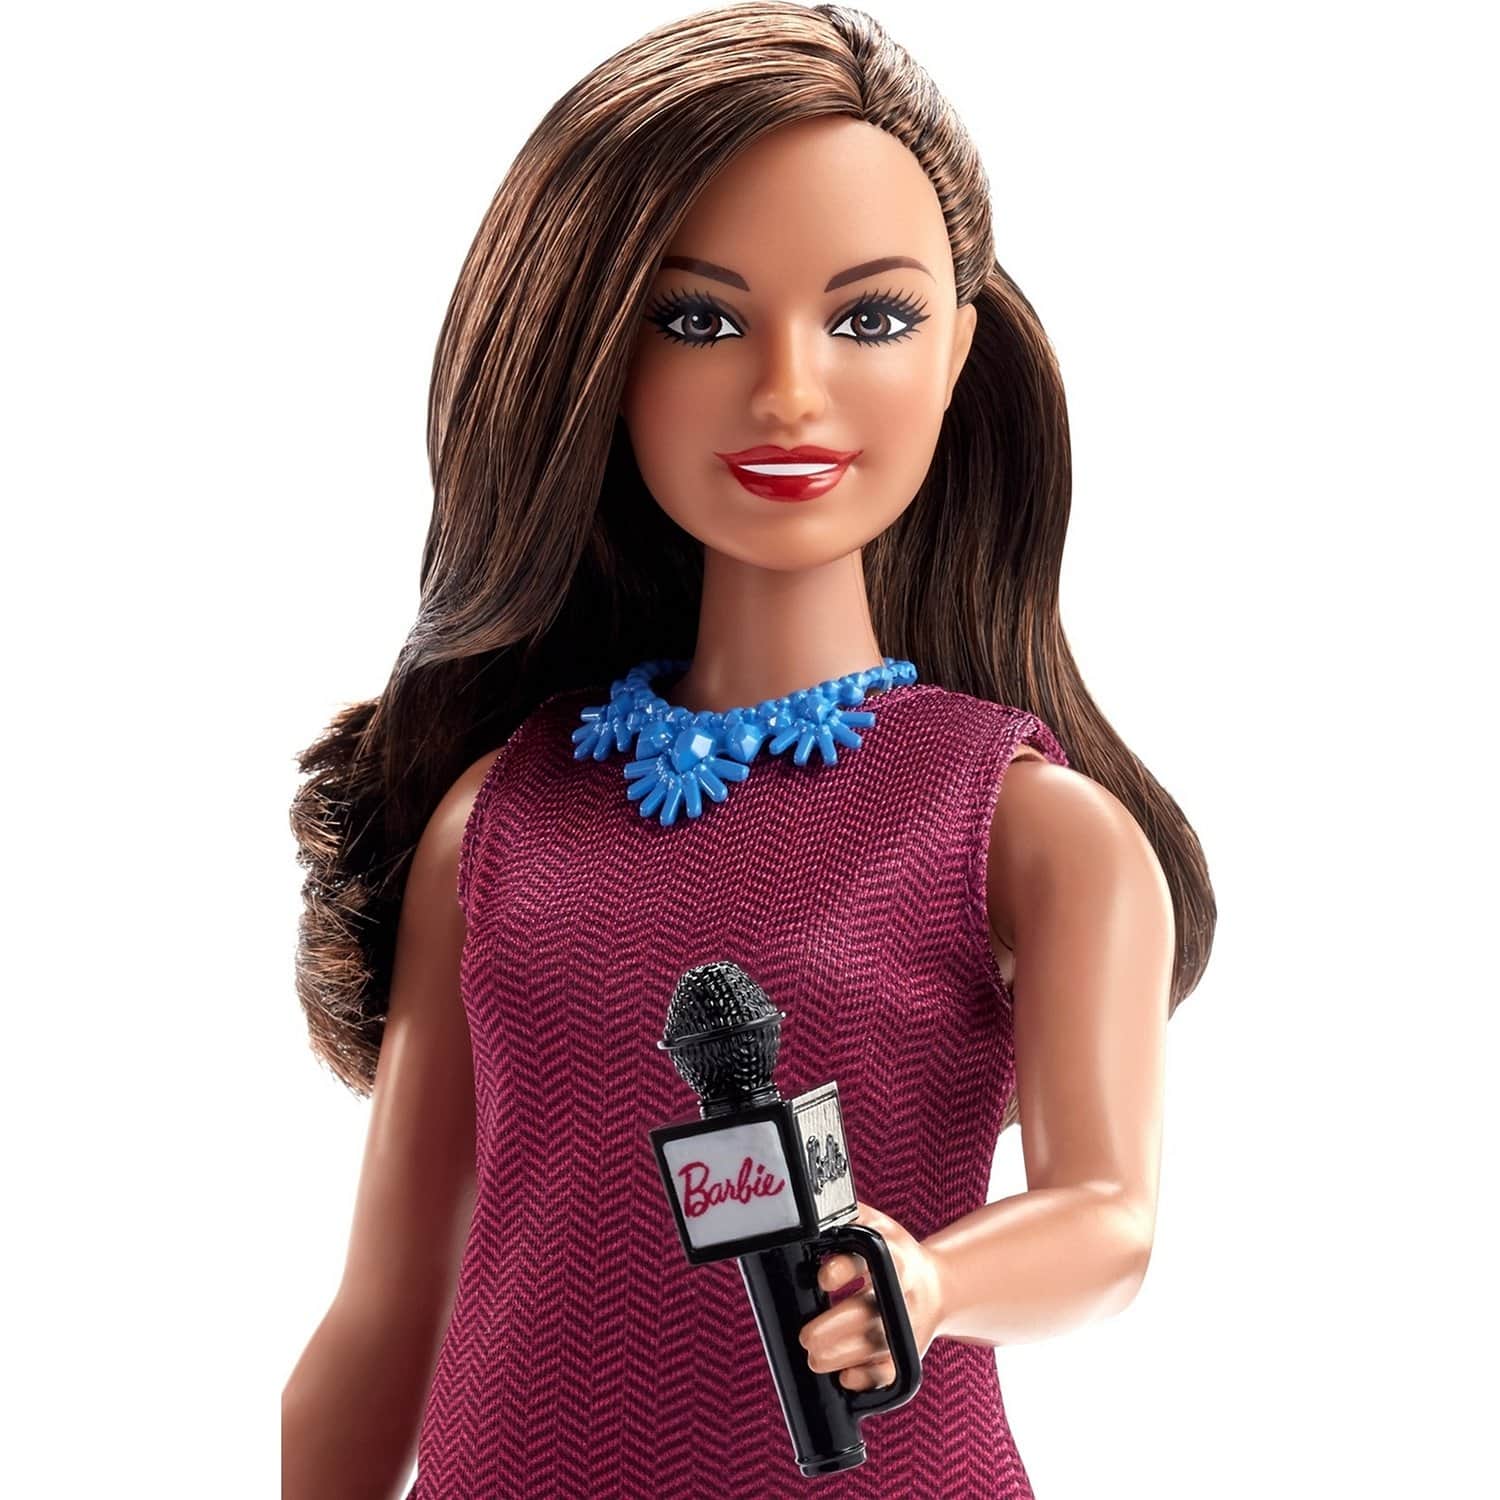 Кукла Barbie Кем быть? Ведущая новостей, 29 см, GFX27